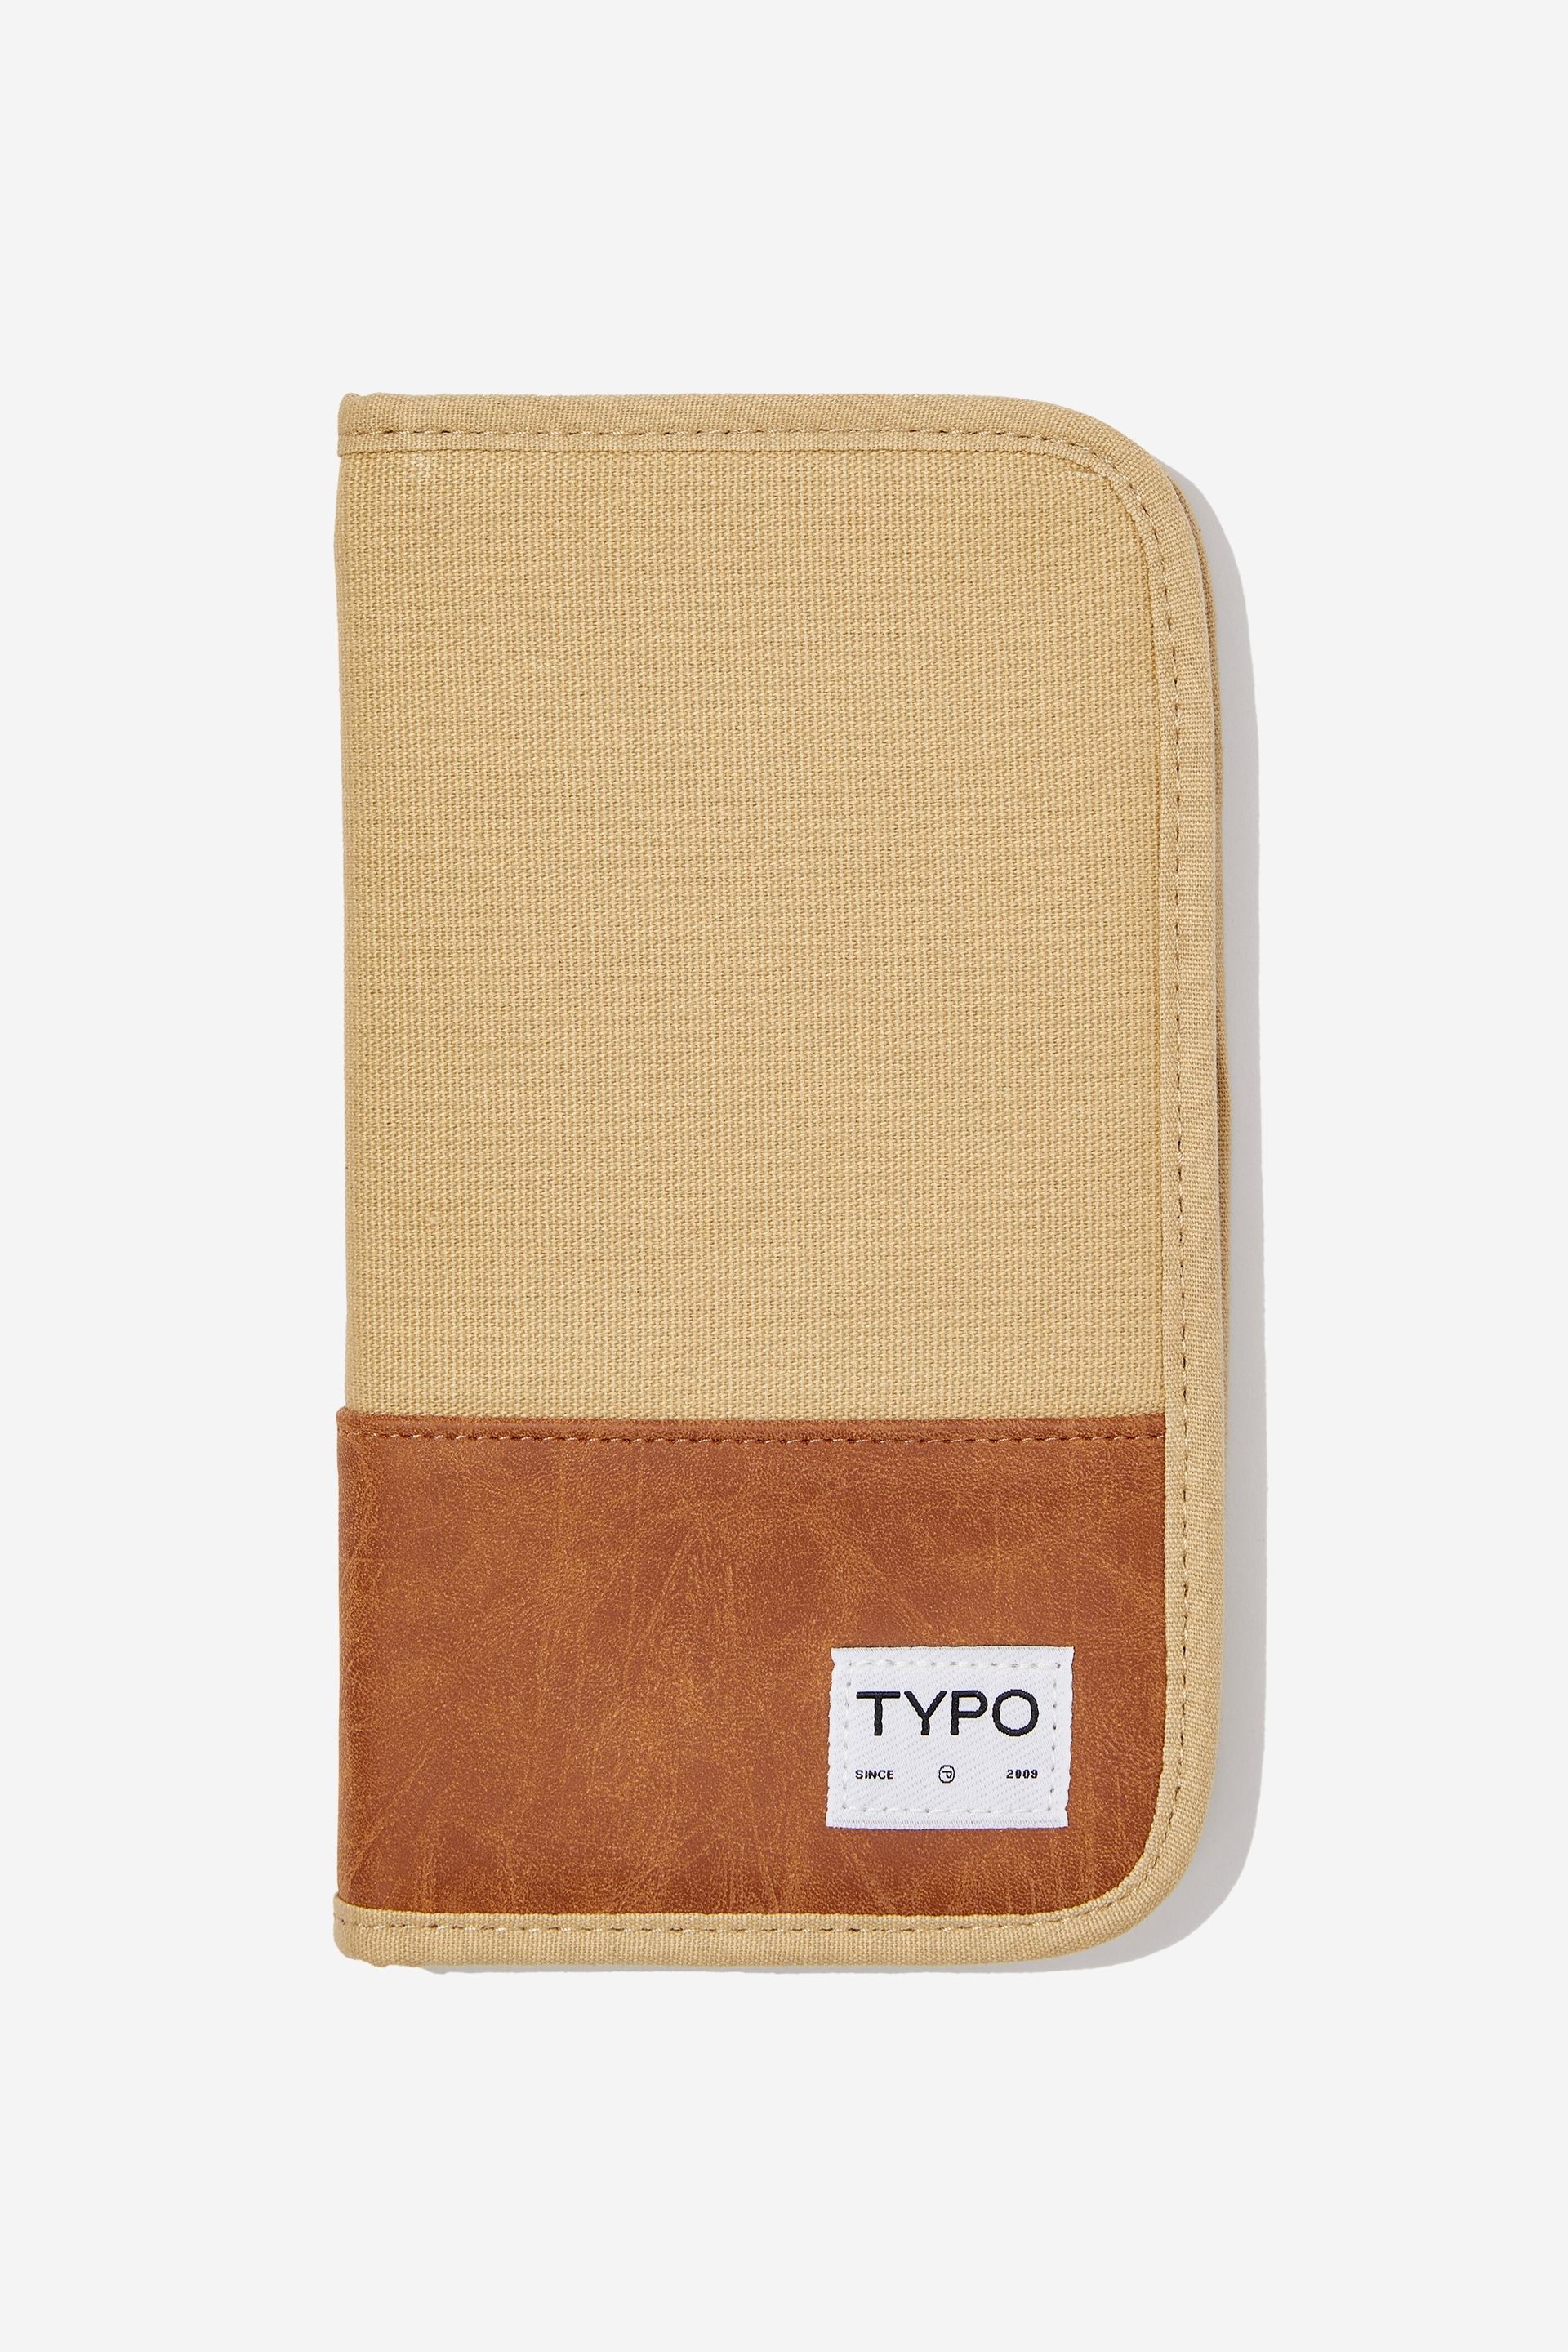 Typo - Heritage Rfid Travel Wallet - Sand / mid tan